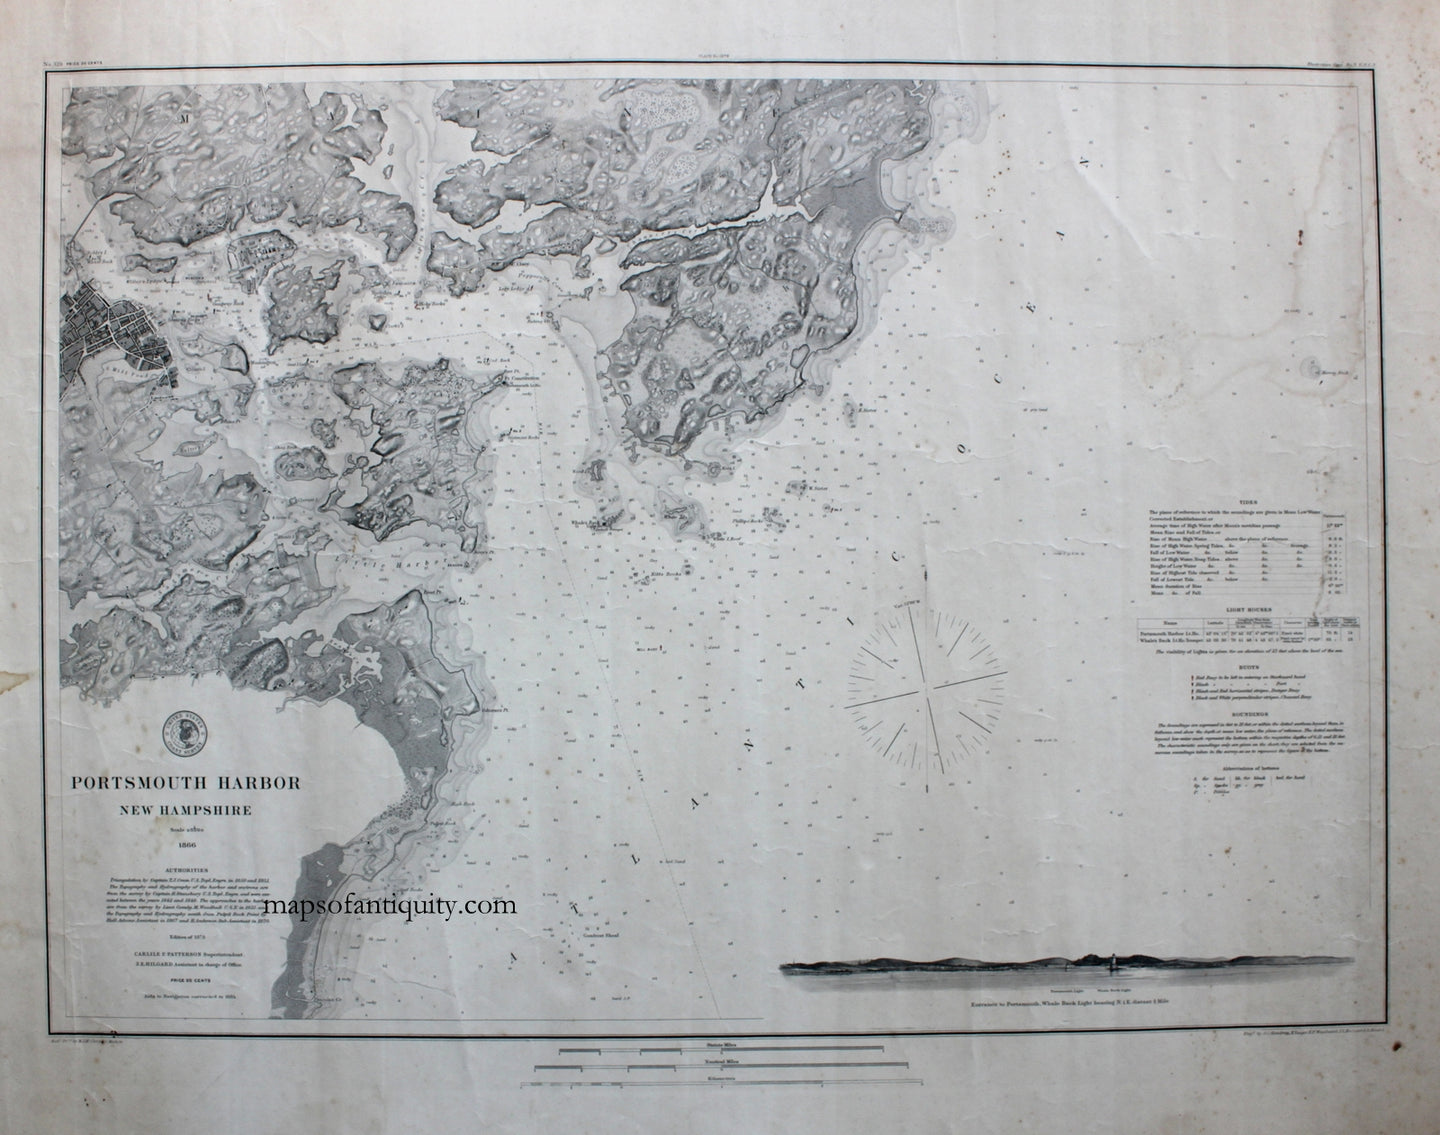 Antique--Nautical-Chart-Portsmouth-Harbor-New-Hampshire-New-England-New-Hamphsire-1884-U.S.-Coast-Survey-Maps-Of-Antiquity